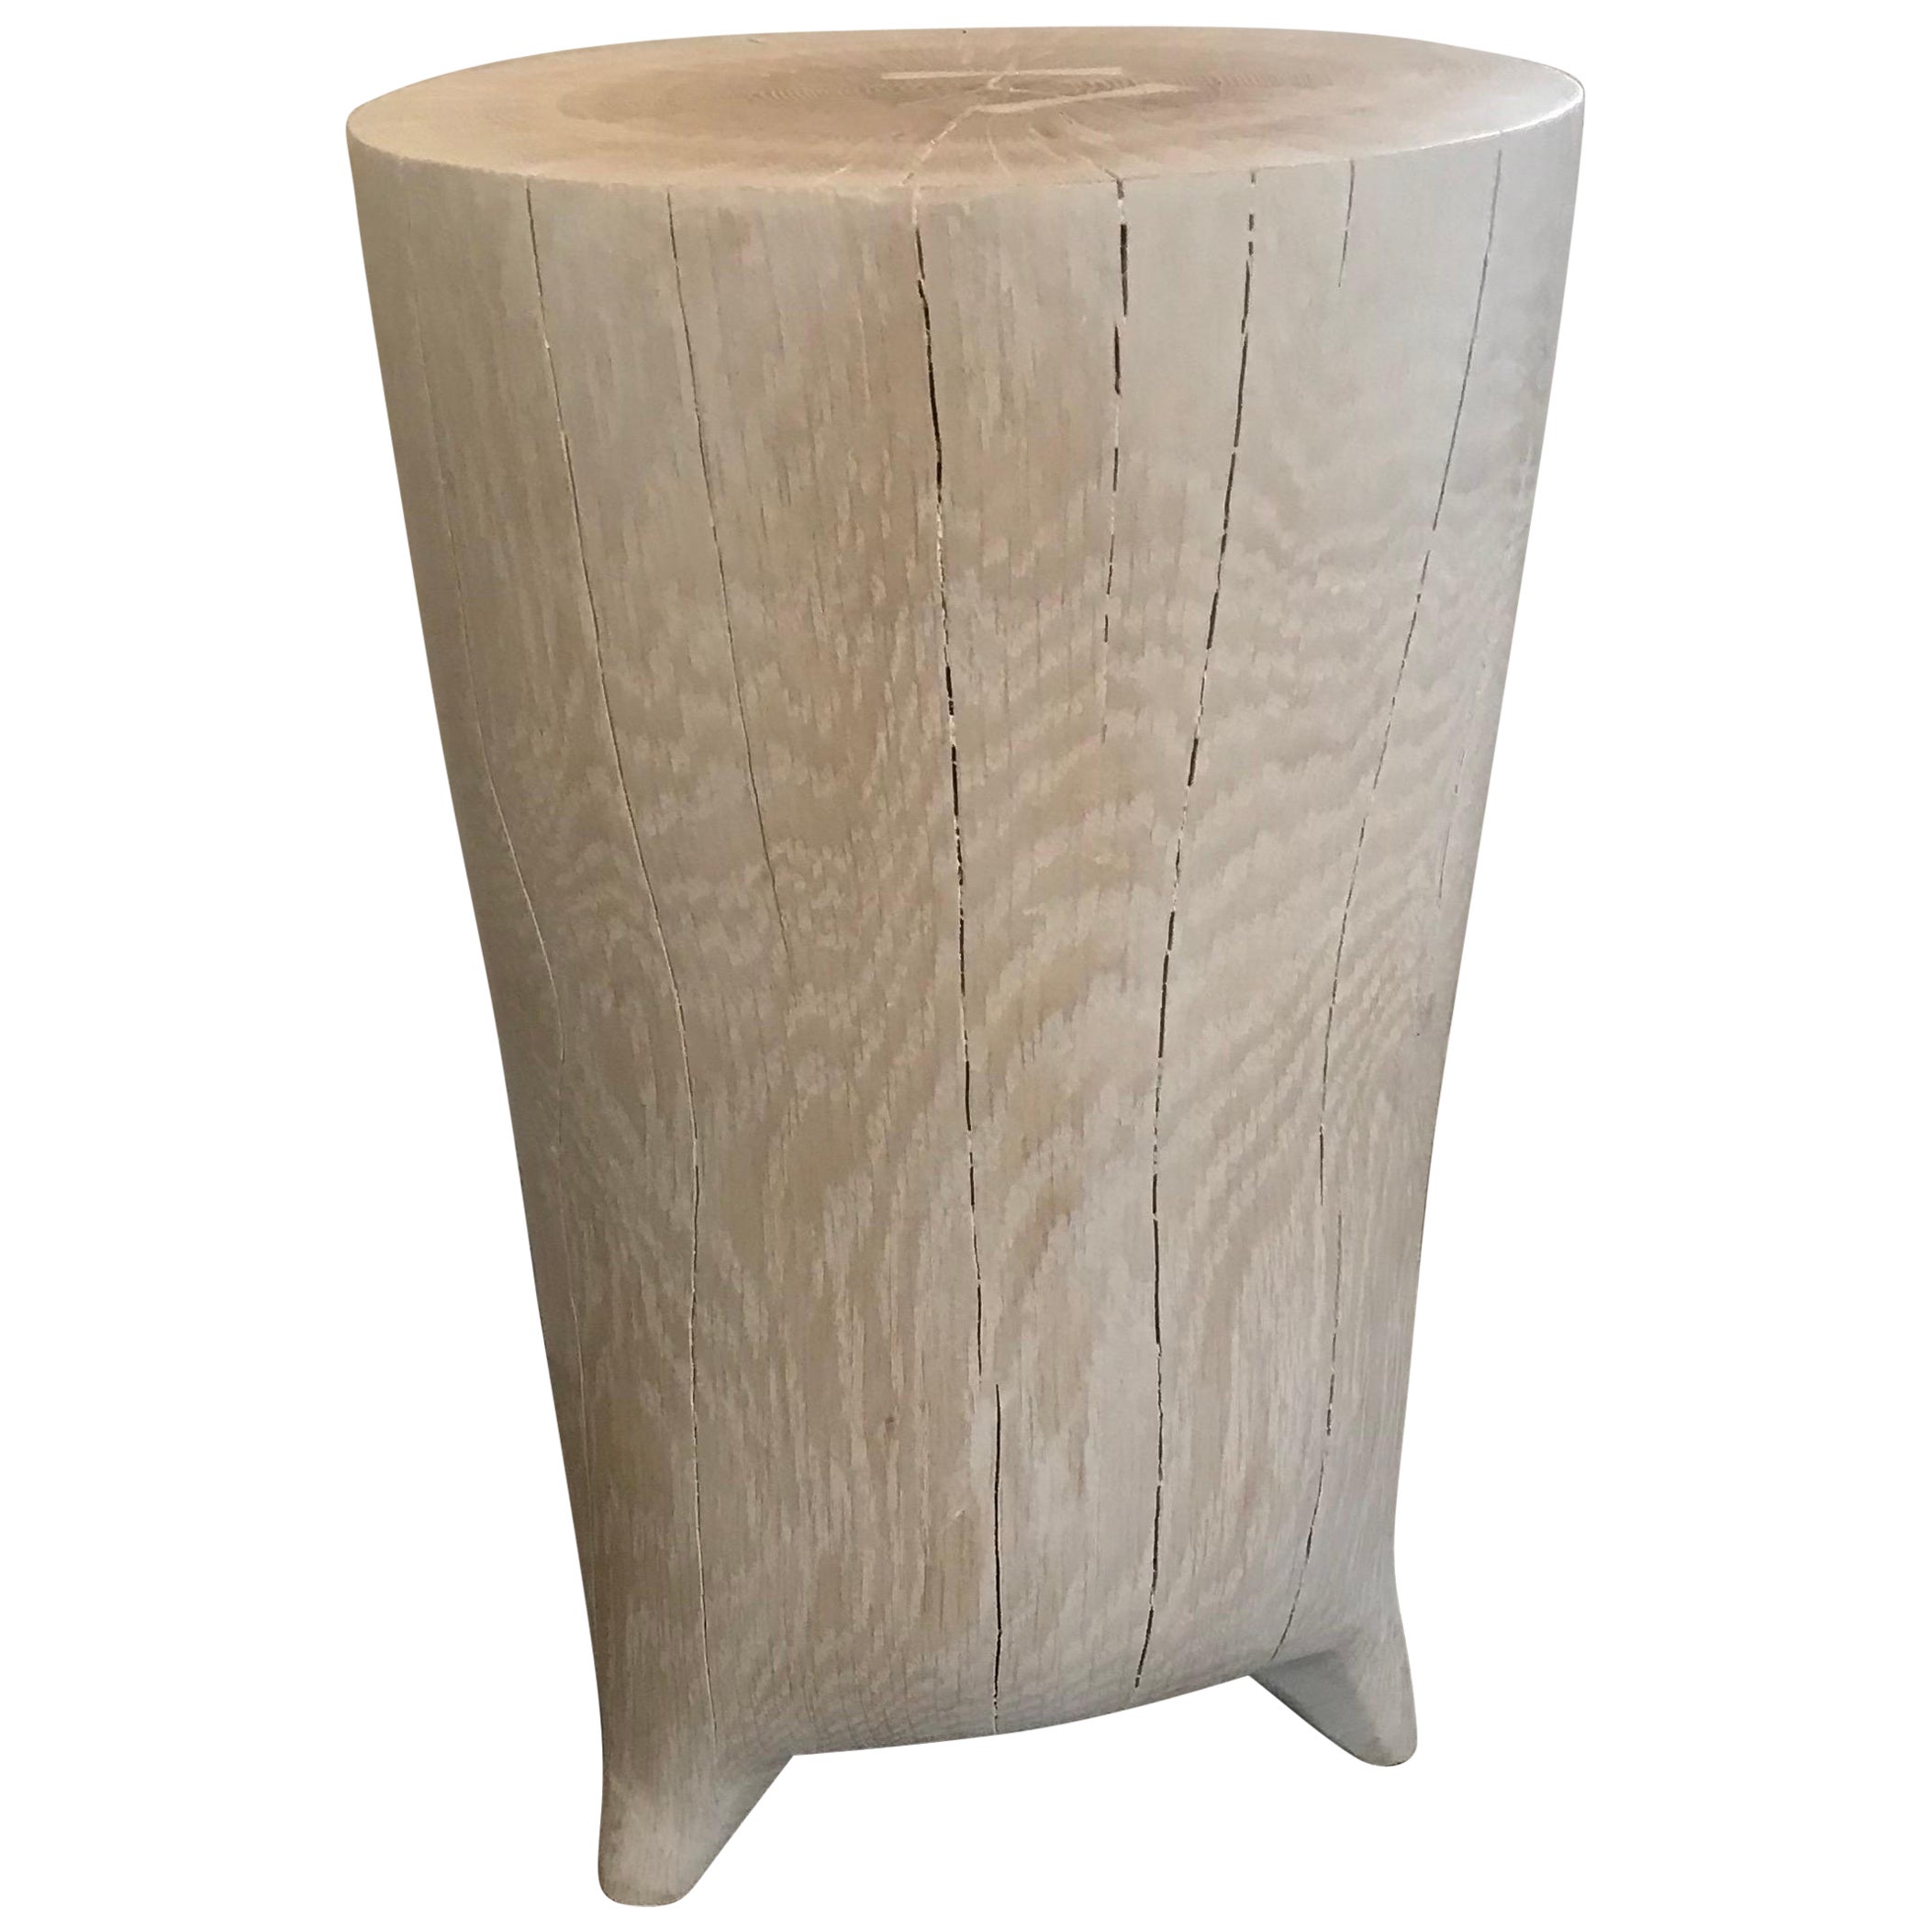 Table d'appoint allongée en bois blanchi sculptée à la main du 21e siècle sur de minuscules pieds en vente